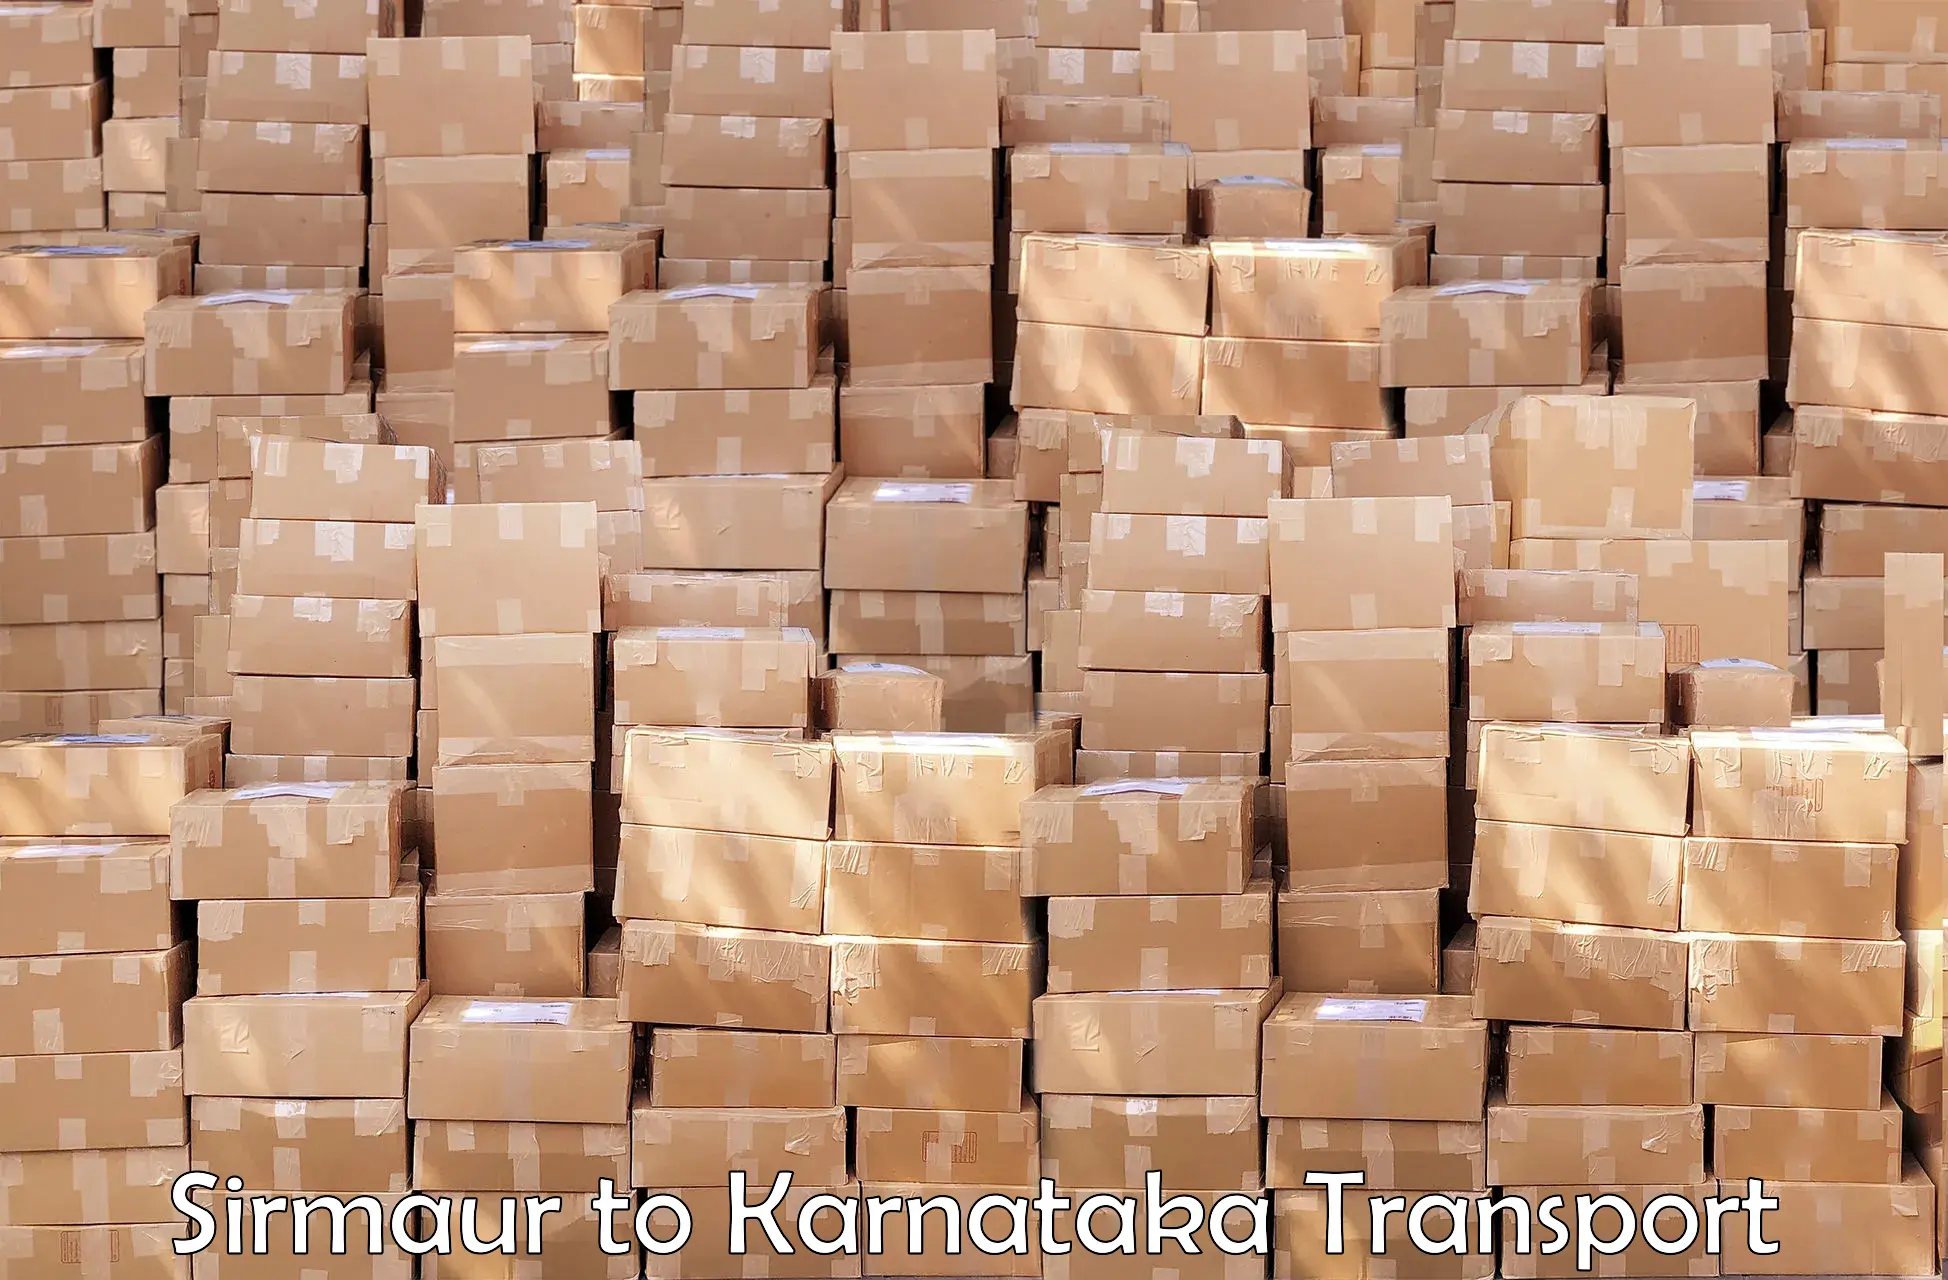 Transport in sharing Sirmaur to Dharmasthala